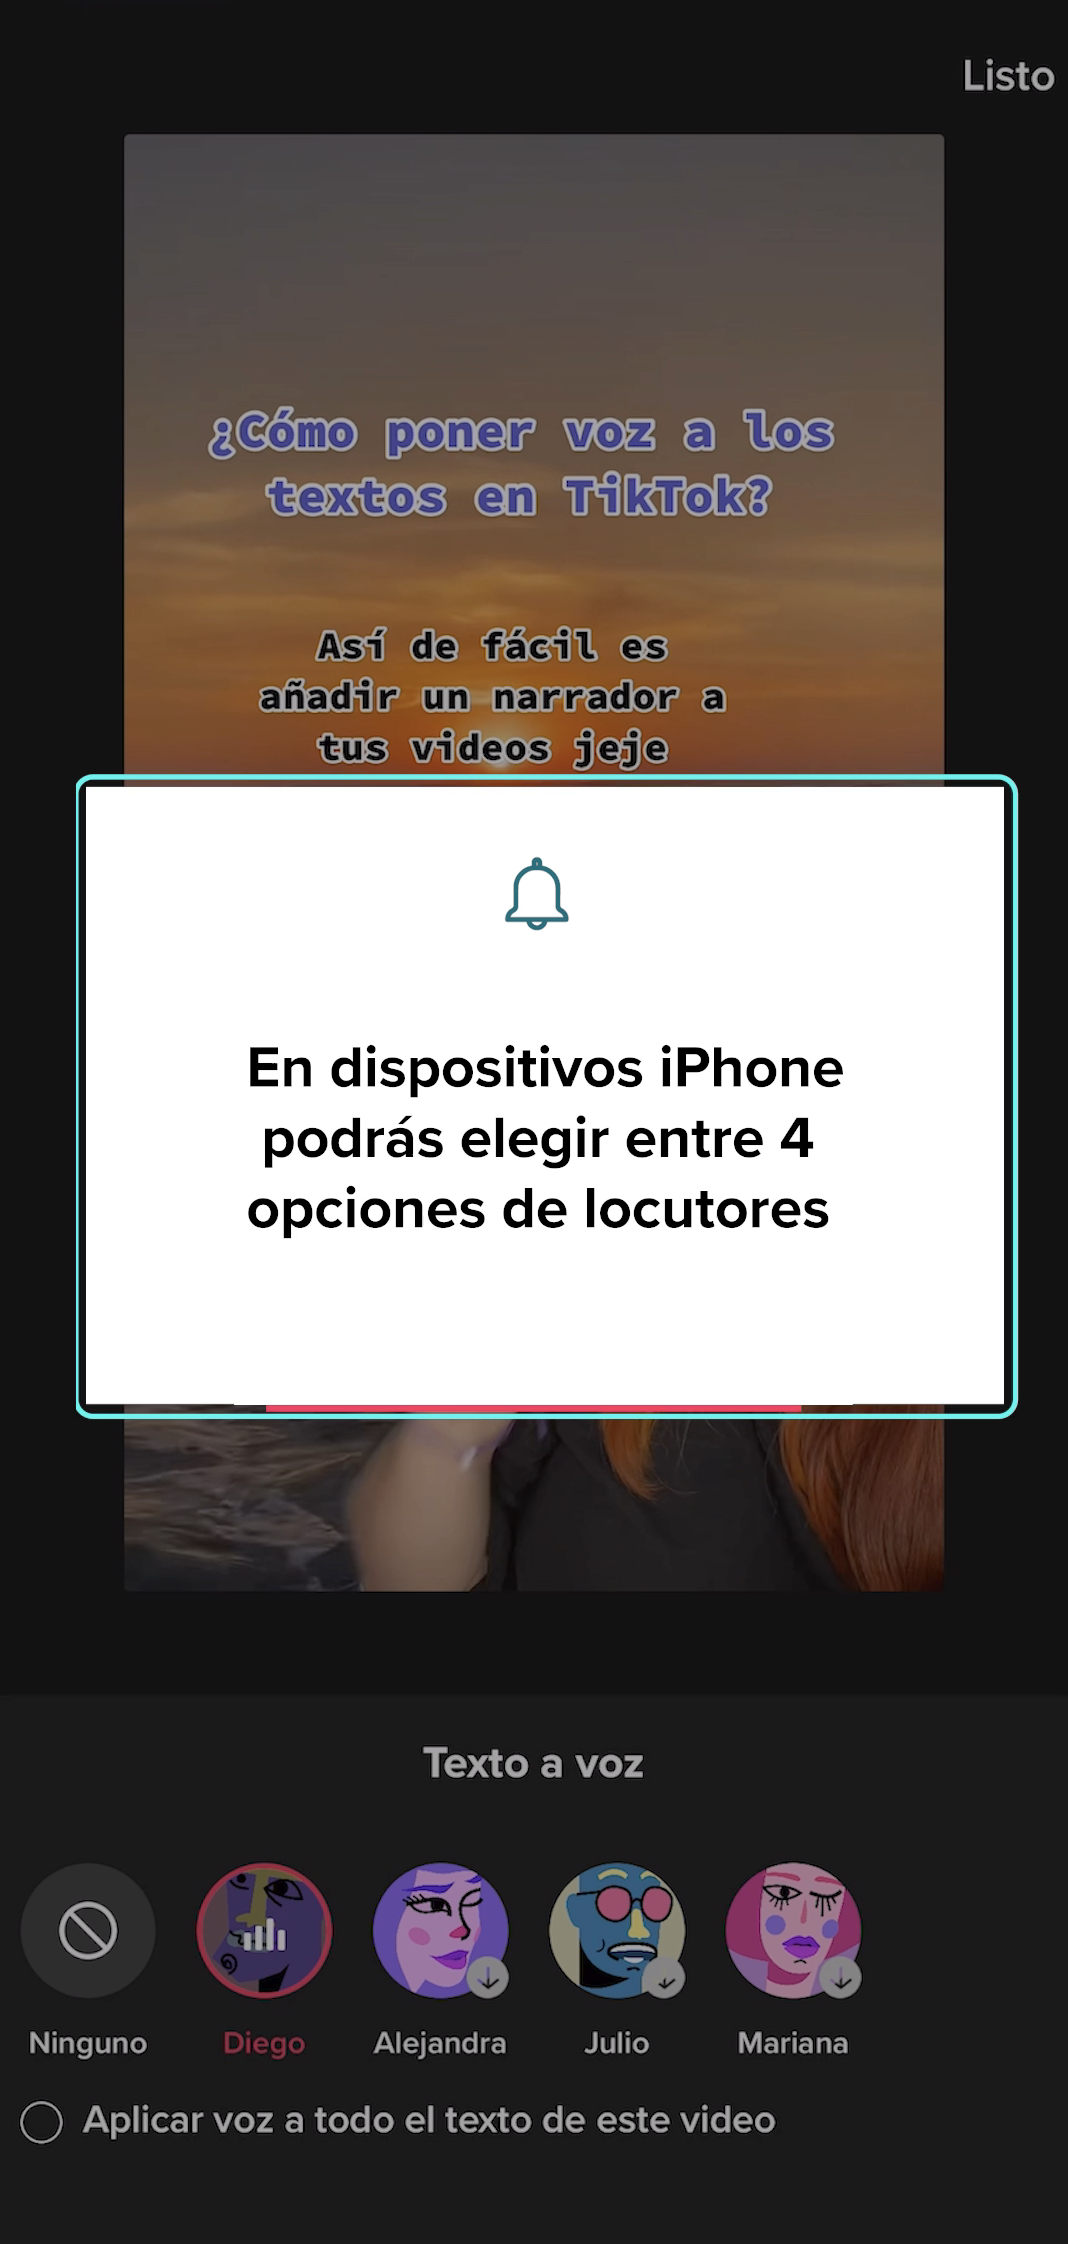 En dispositivos iPhone podrás elegir entre 4 opciones de locutores, mientras que si tu celular es Android solo podrás escuchar la voz de Diego.